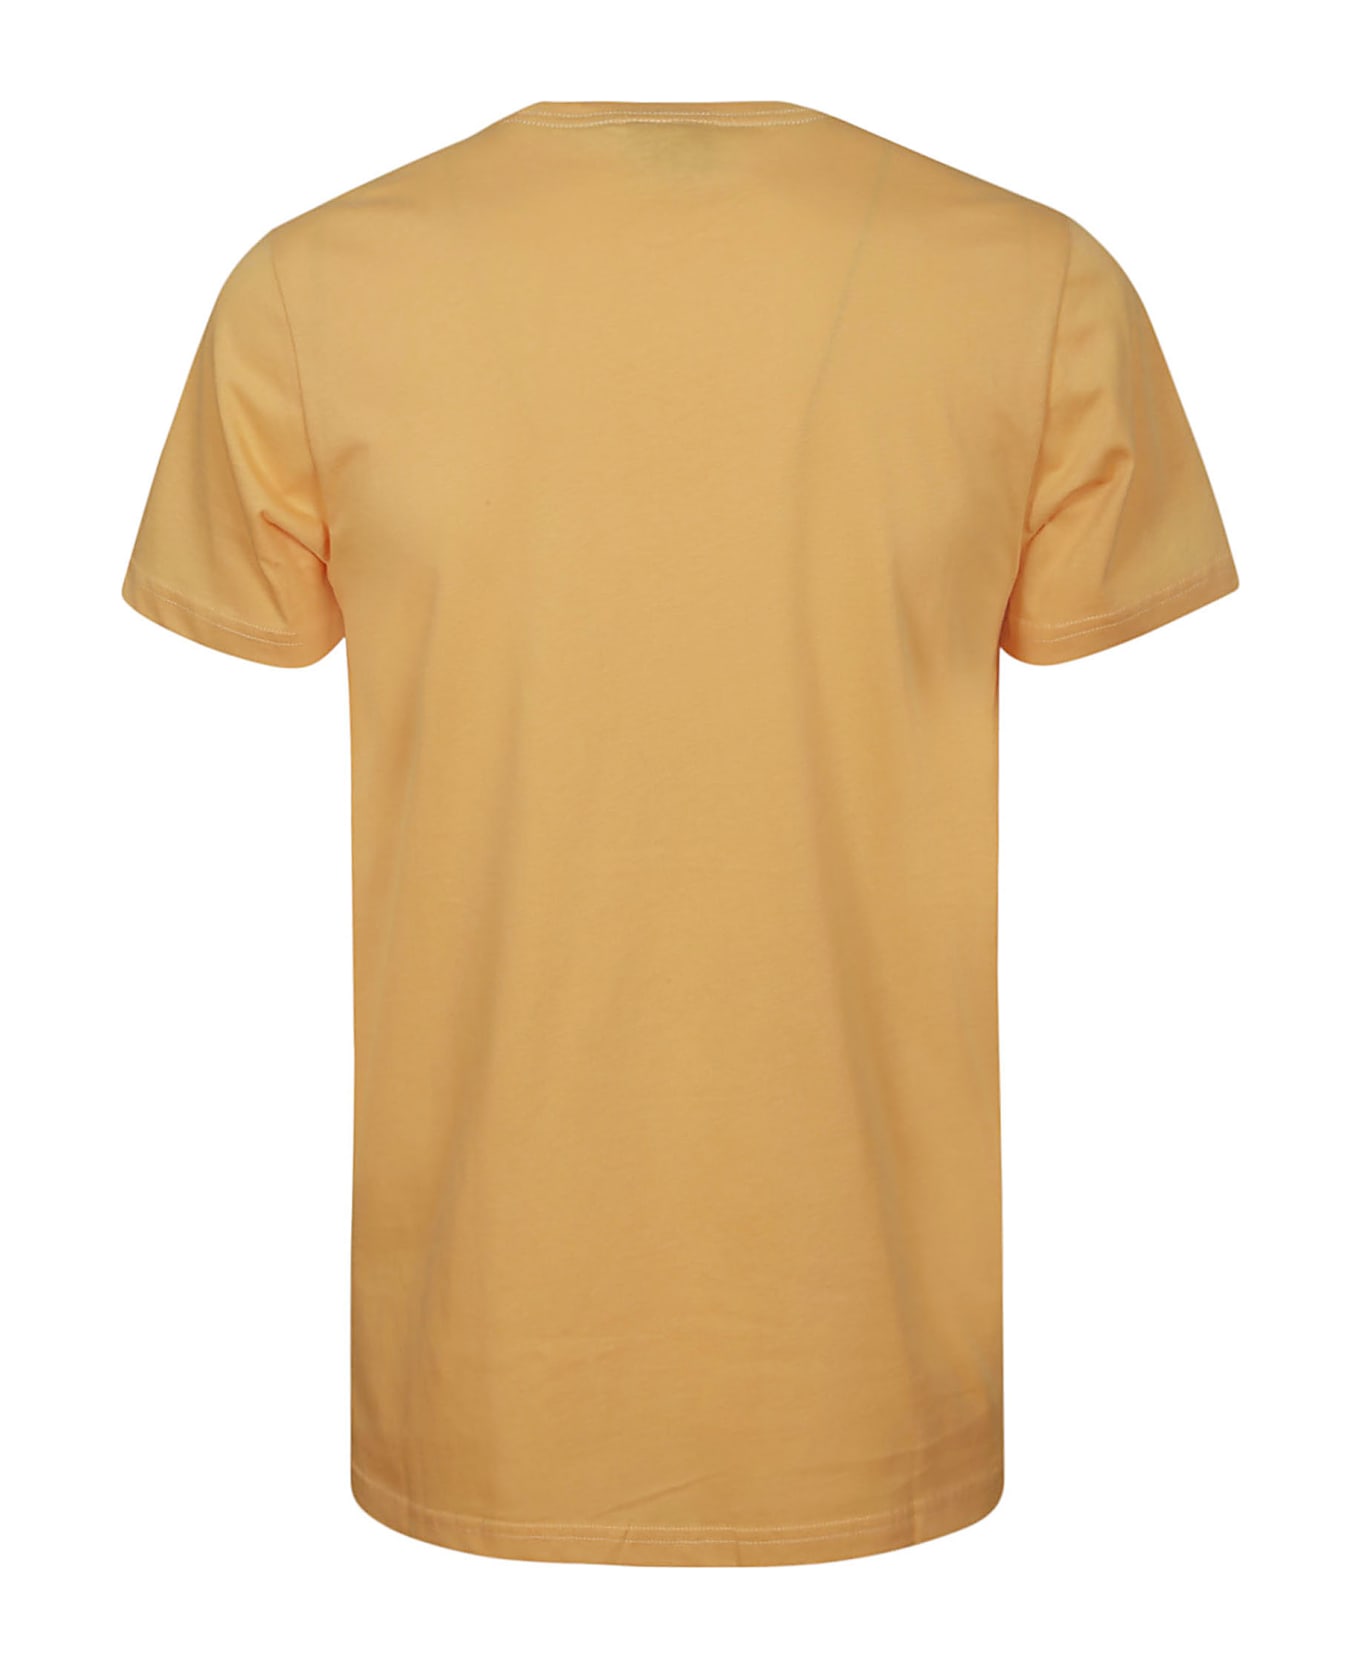 Paul Smith Slim Fit T-shirt B&w Zebra - A Orange